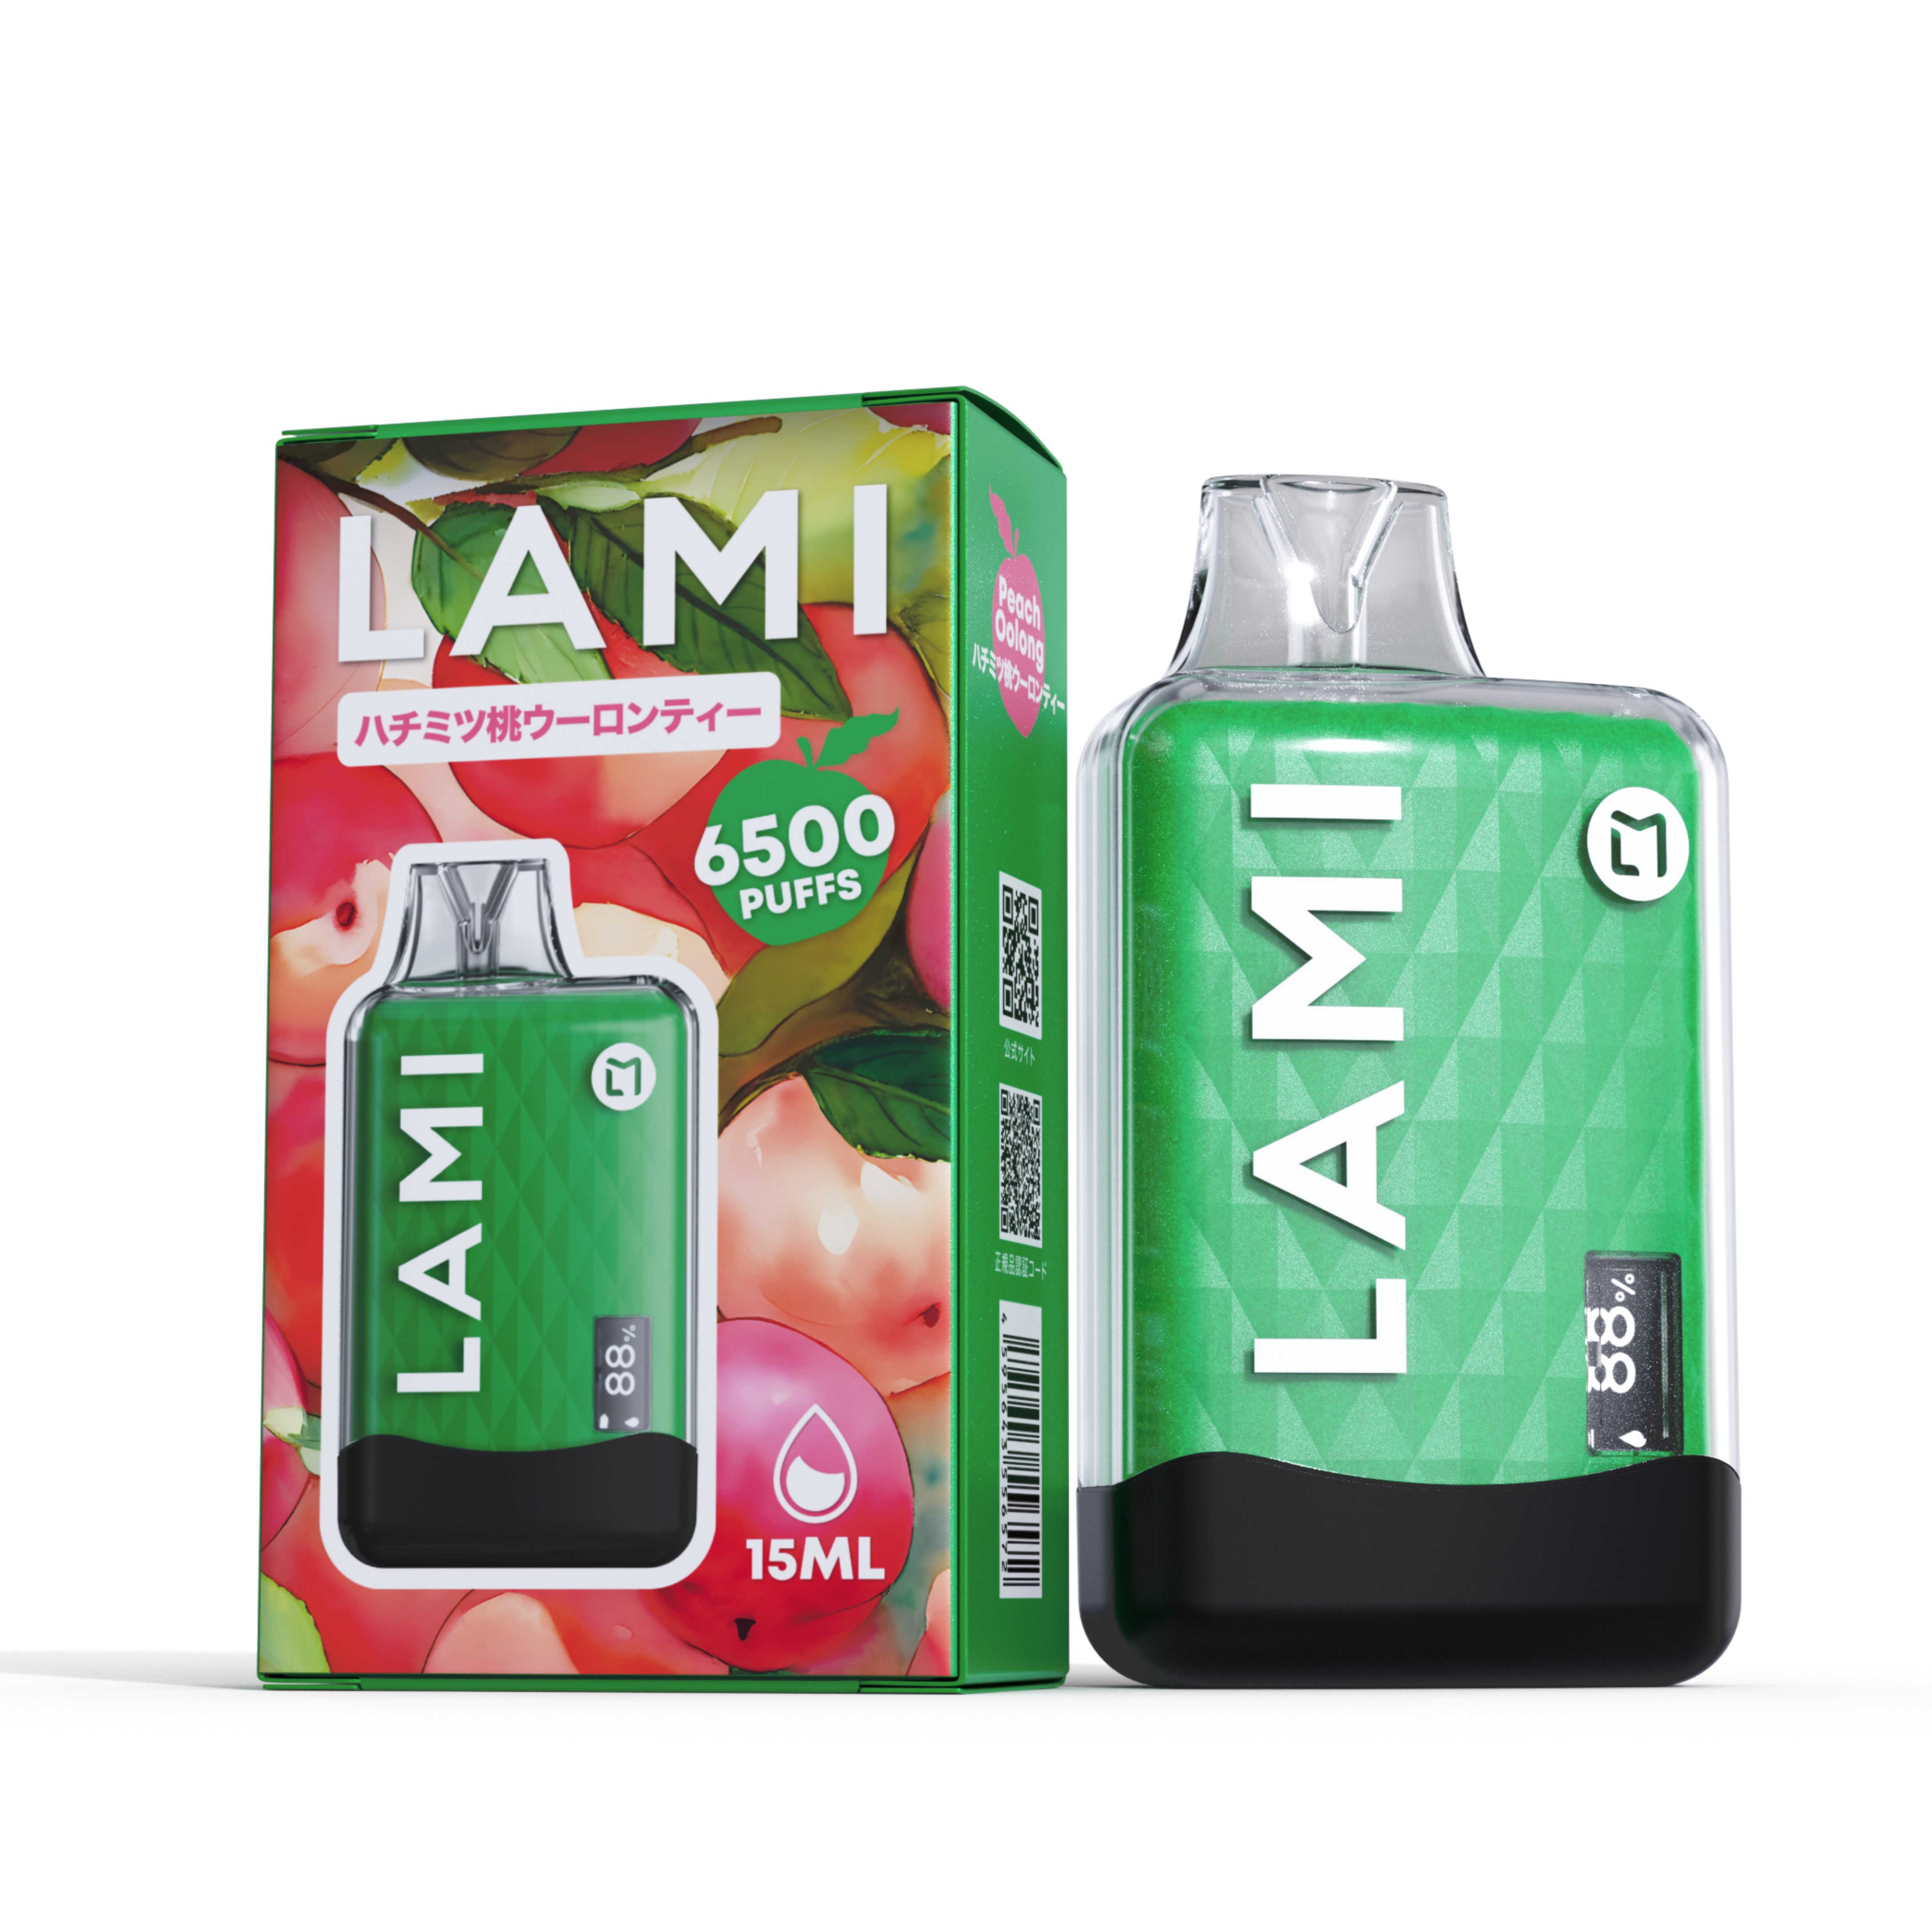 LAMI M8 6500 Puffs Disposable Vape Wholesale - Vapz Vape Wholesale